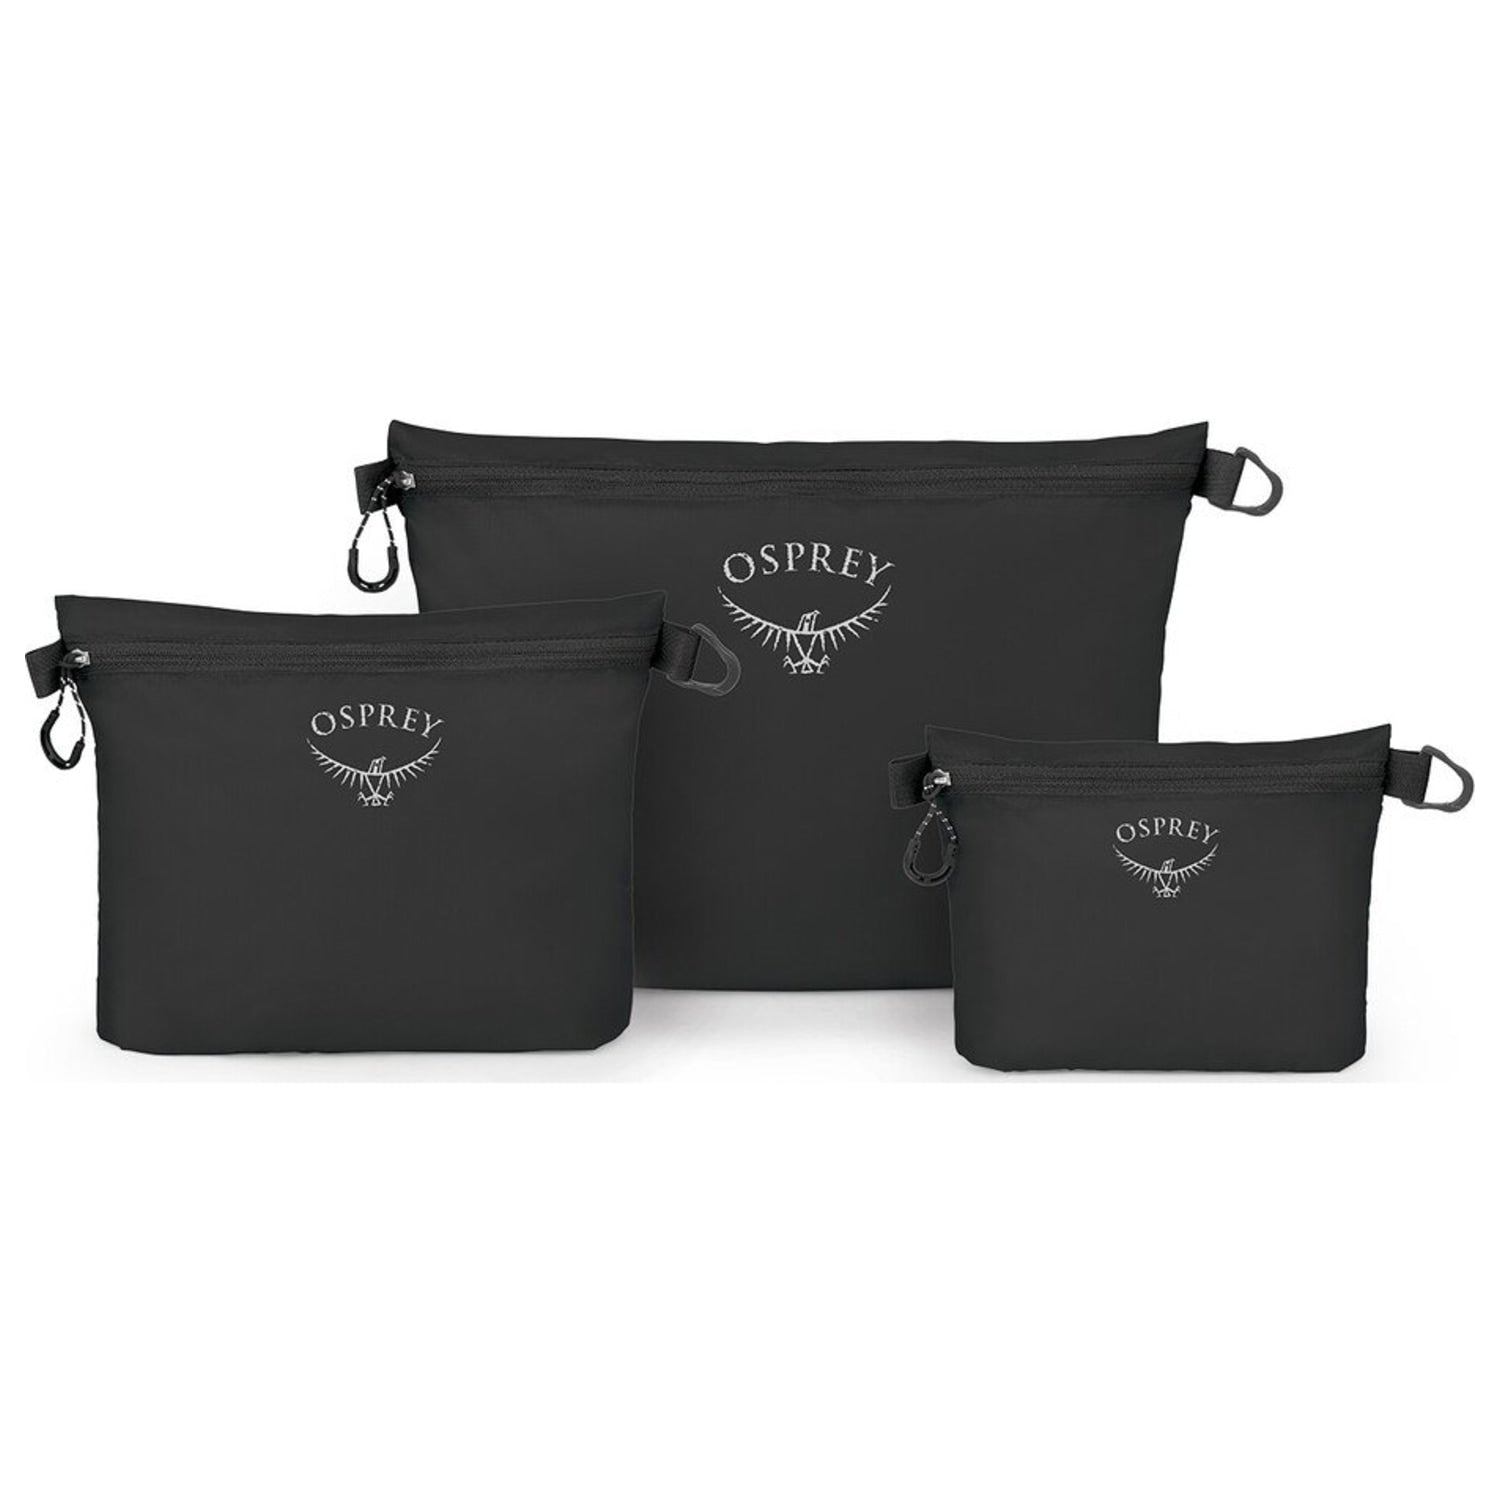 Osprey Osprey Ultralight Zipper Sack Set - S/M/L